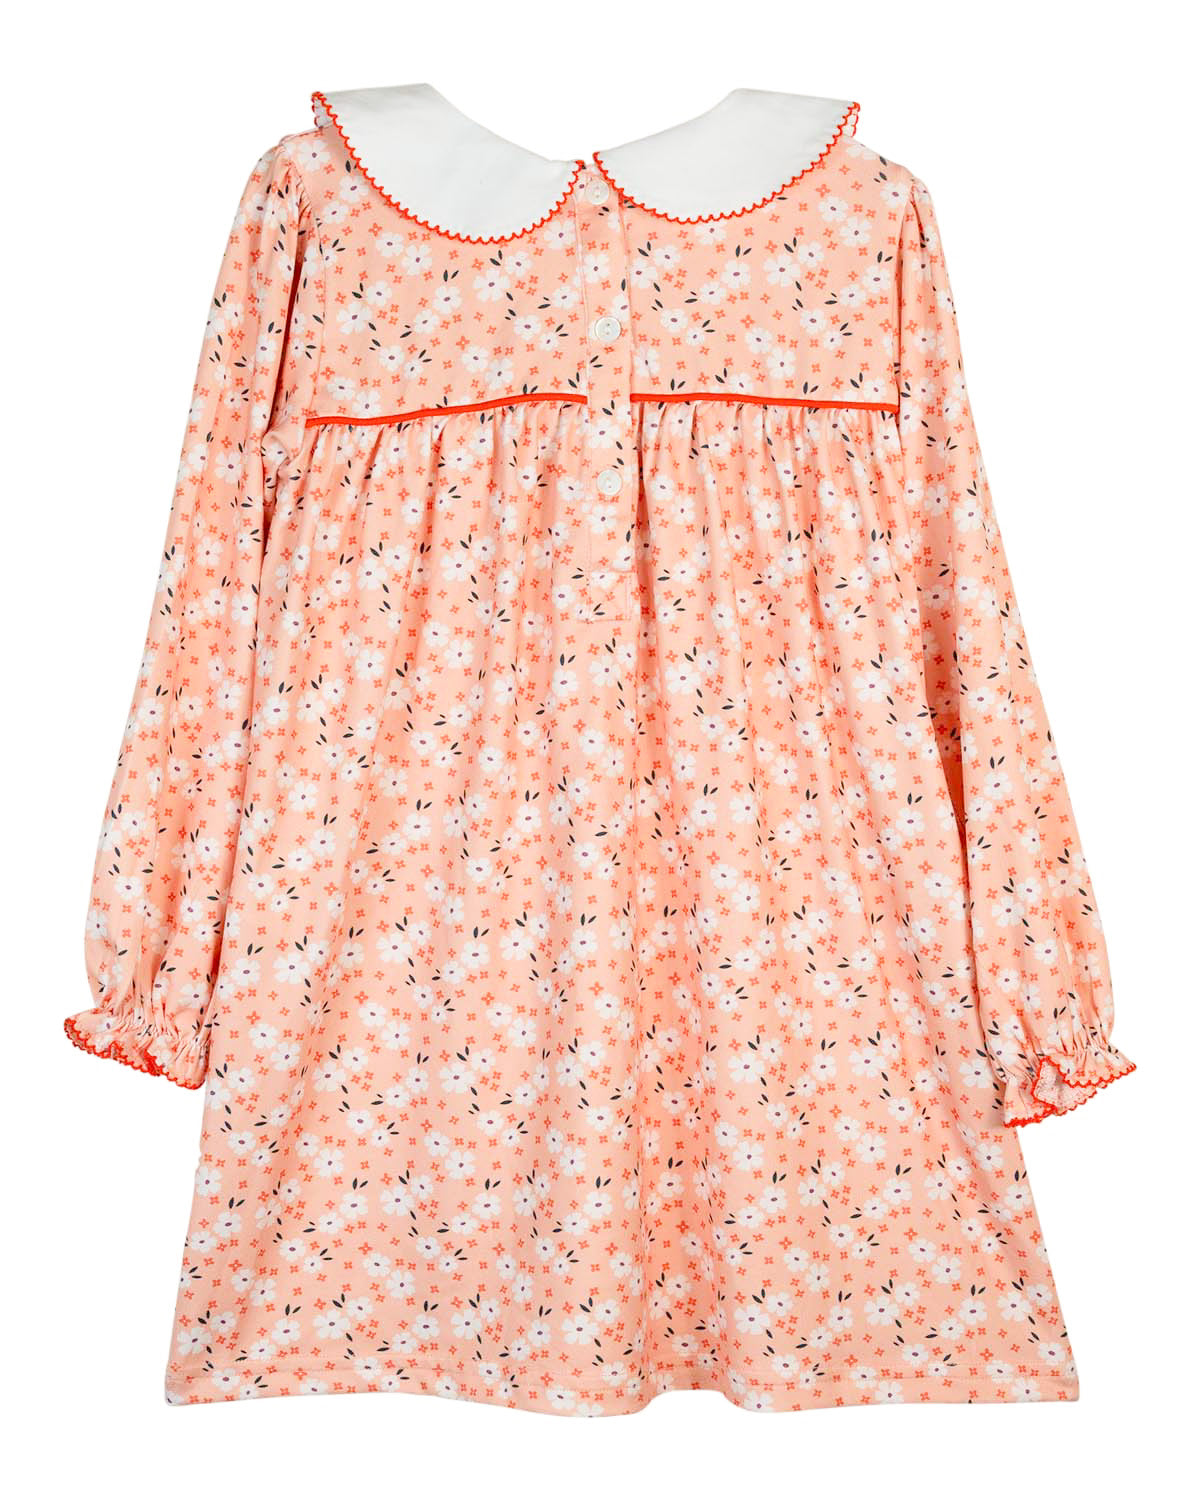 Pumpkin Applique Floral Knit Dress-FINAL SALE